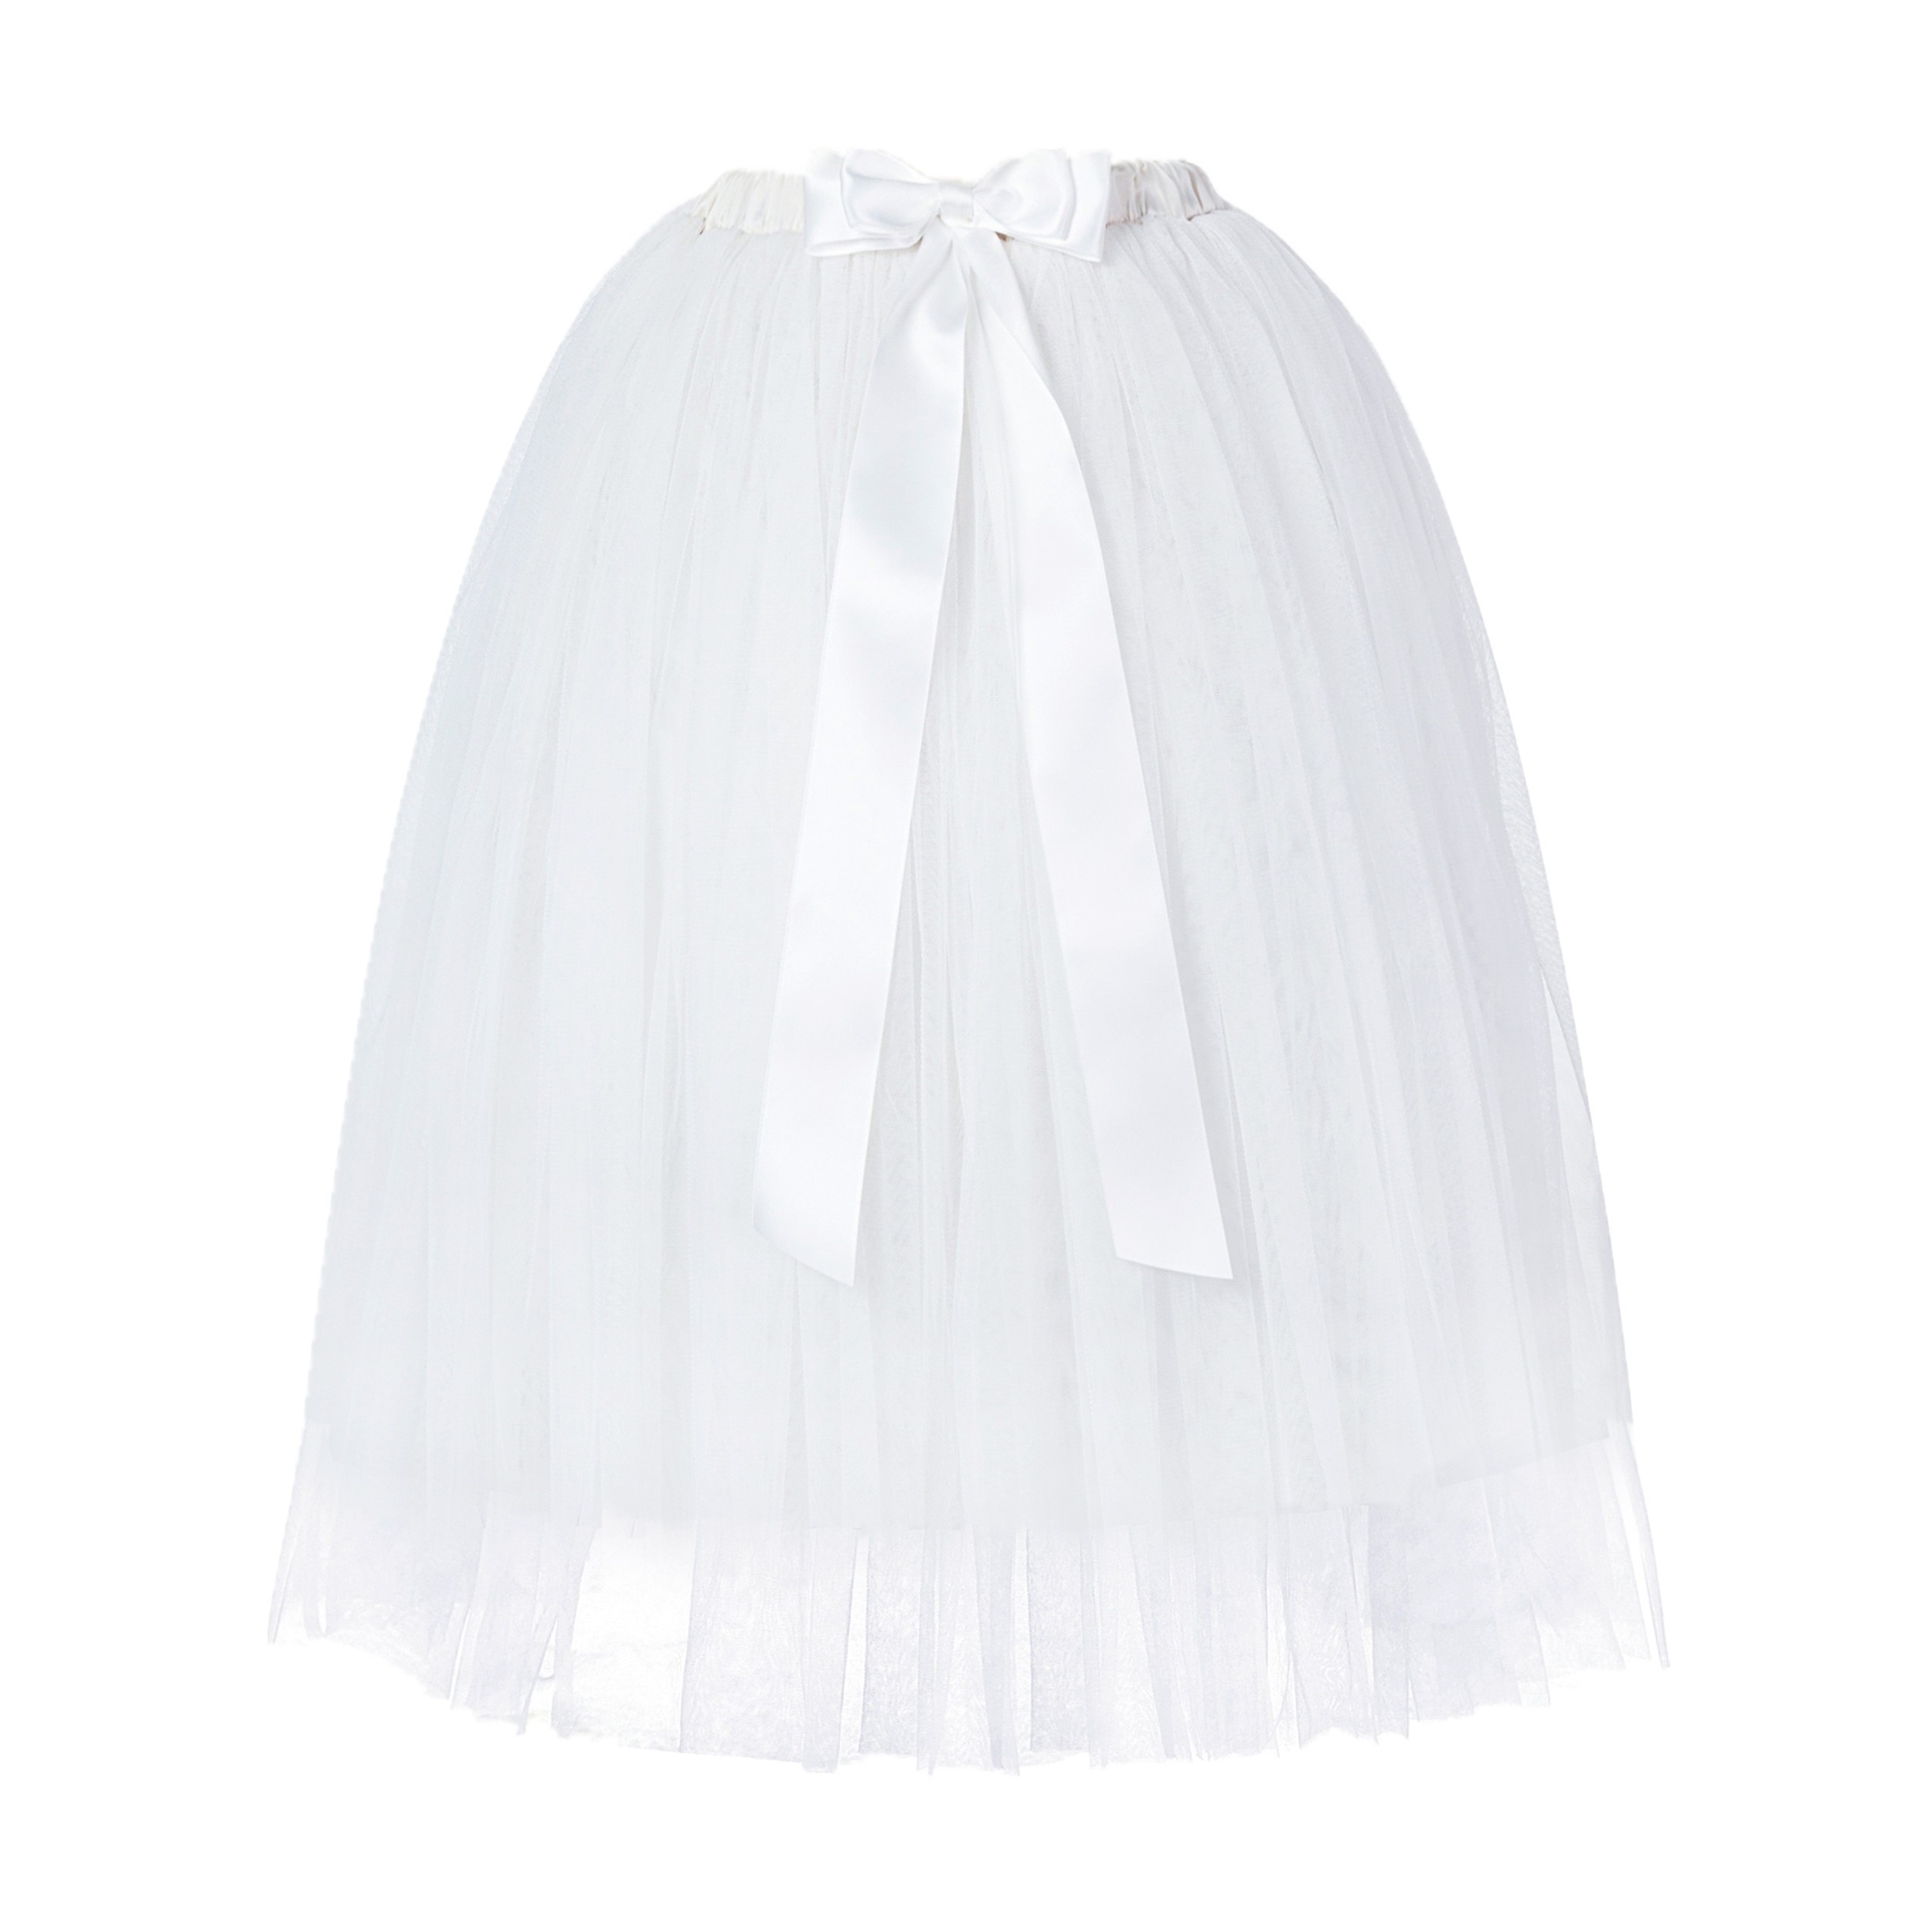 White Flower Girls Tulle Skirt Tutu Skirt Tulle Maxi Skirts